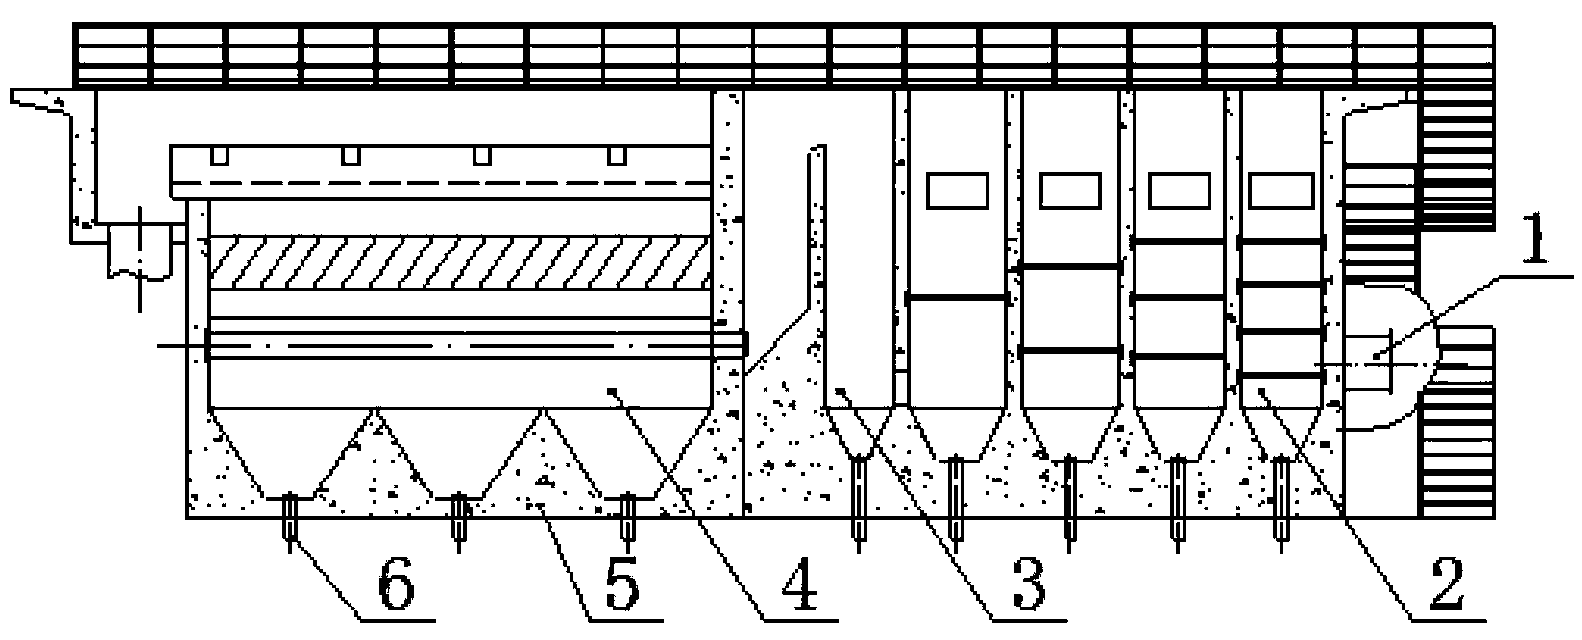 Novel grid flocculation sedimentation tank